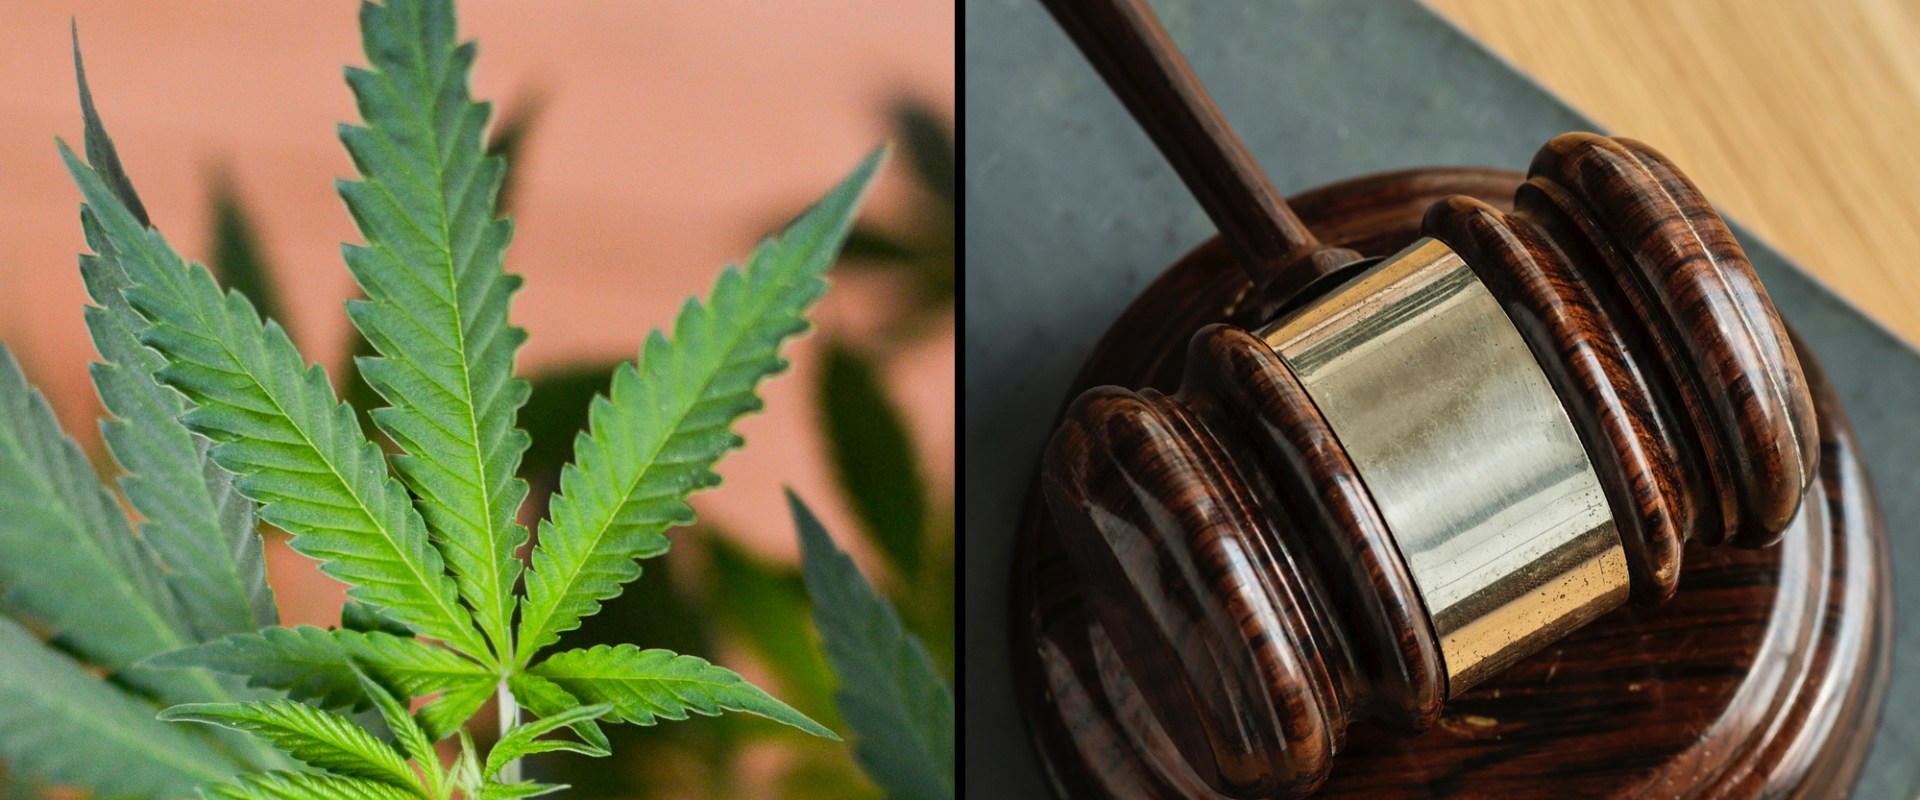 Why should we legalize marijuanas?